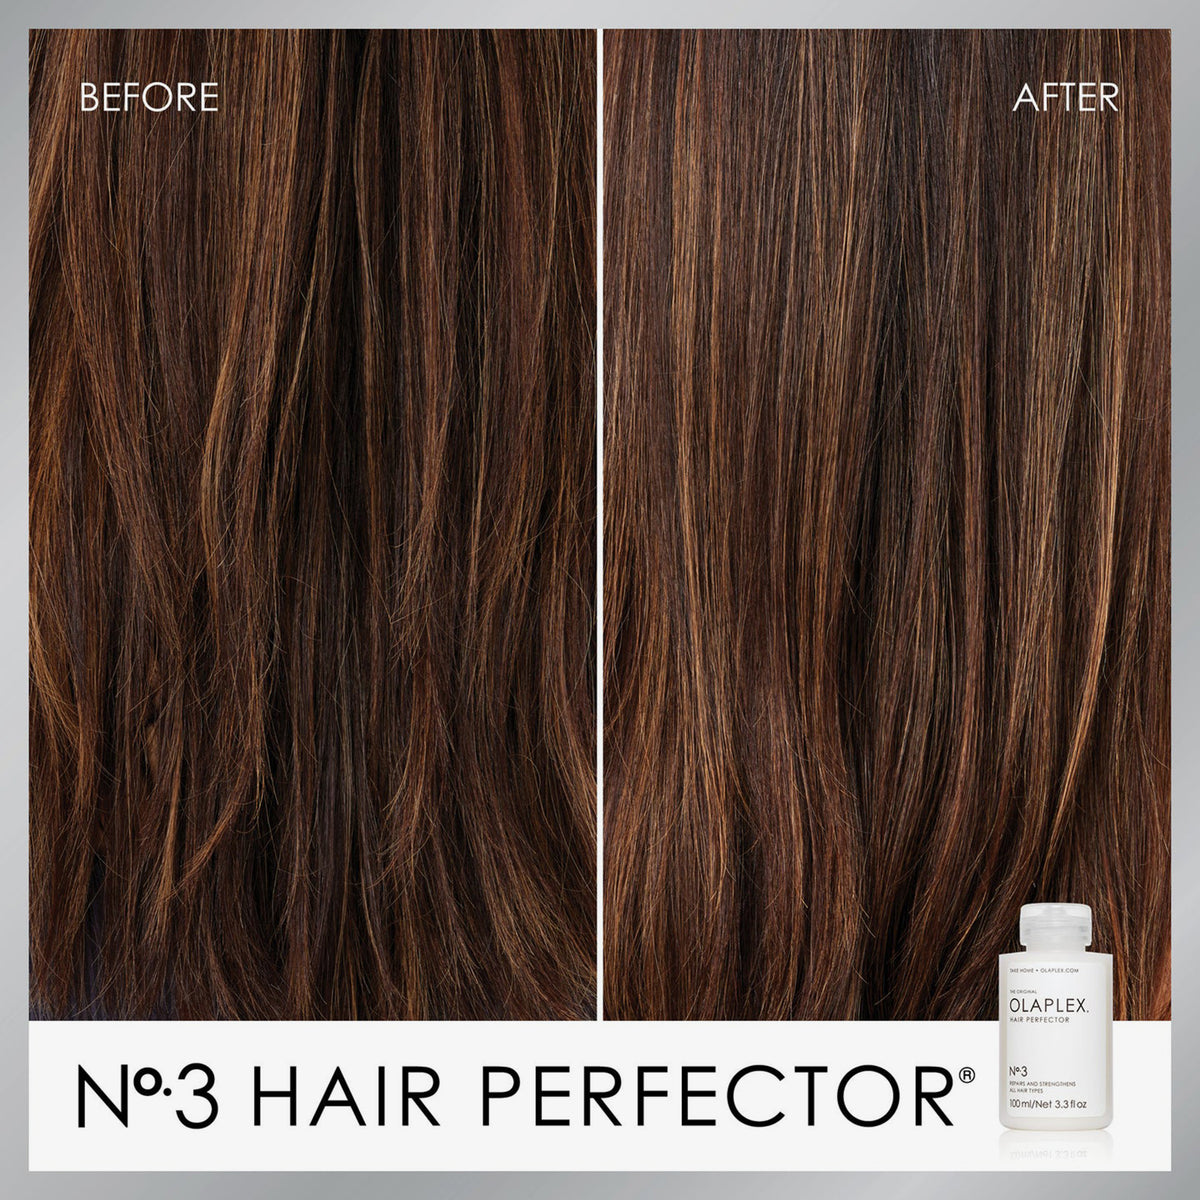 Vorher/Nachher Vergleich mit OLAPLEX No.3 Hair Perfector bei braunen, glatten Haaren. 